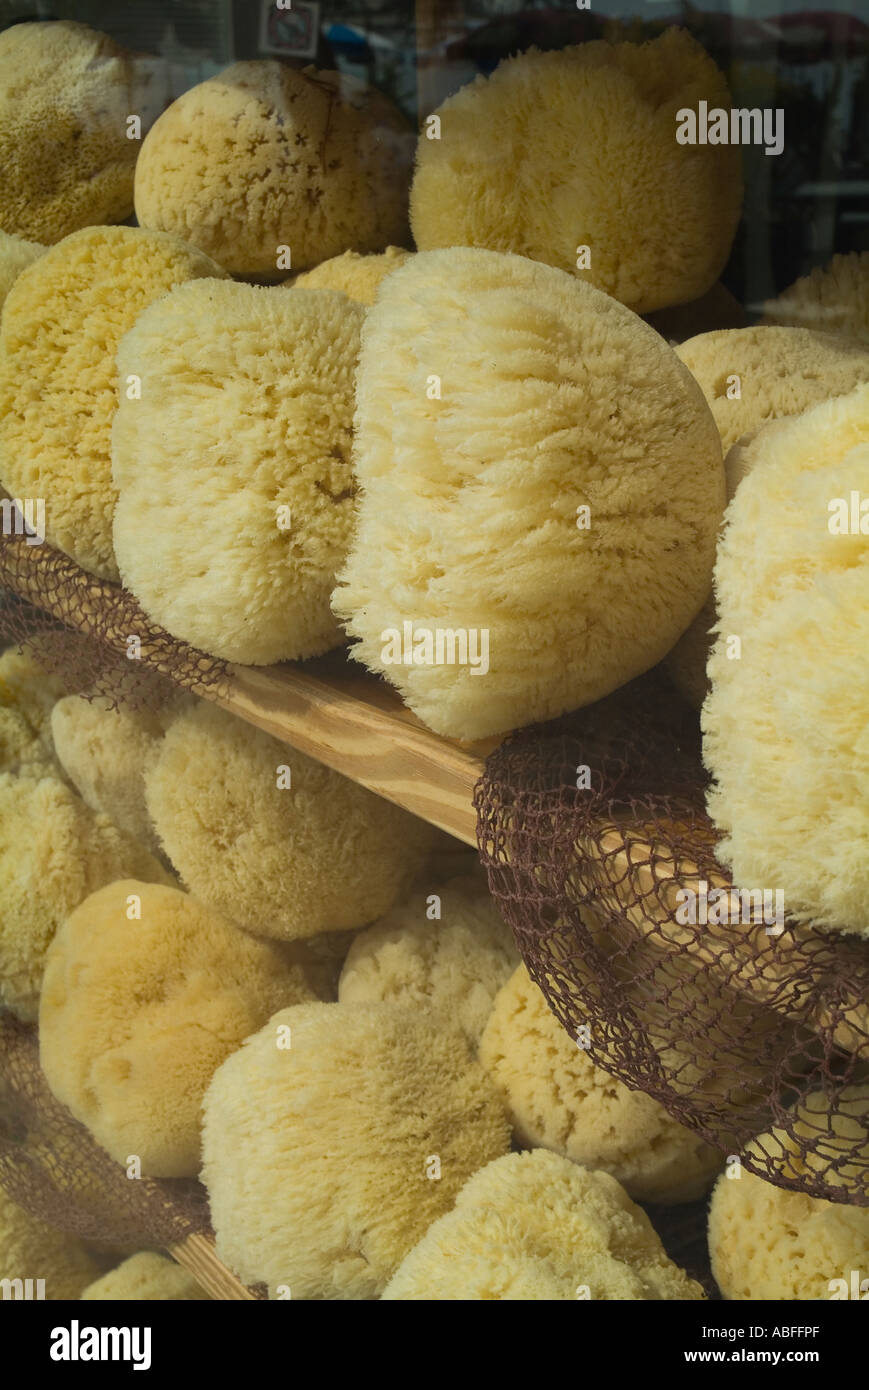 dh Porifera Demospongiae éponges MARINE FUERTEVENTURA éponges naturelles sur Vente dans la boutique Corralejo fenêtre Banque D'Images